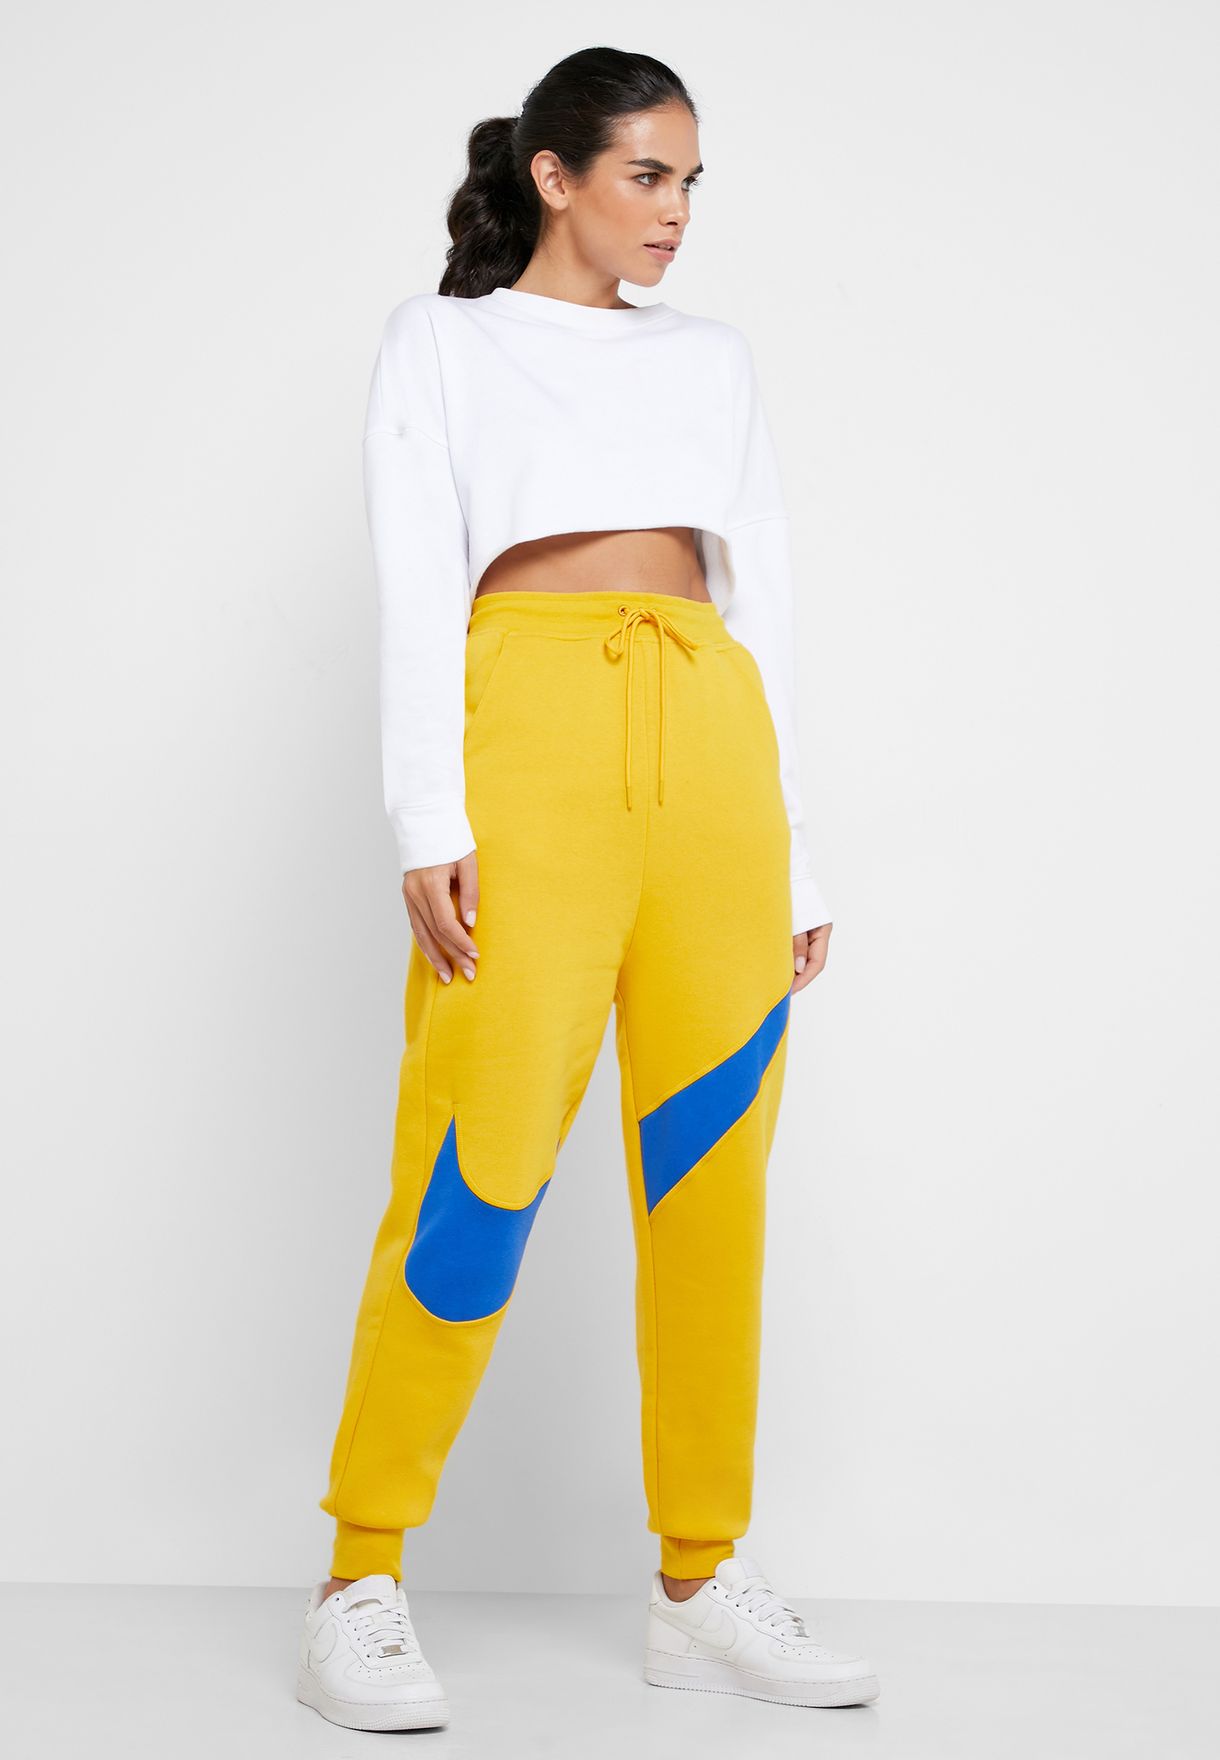 yellow nike fleece pants